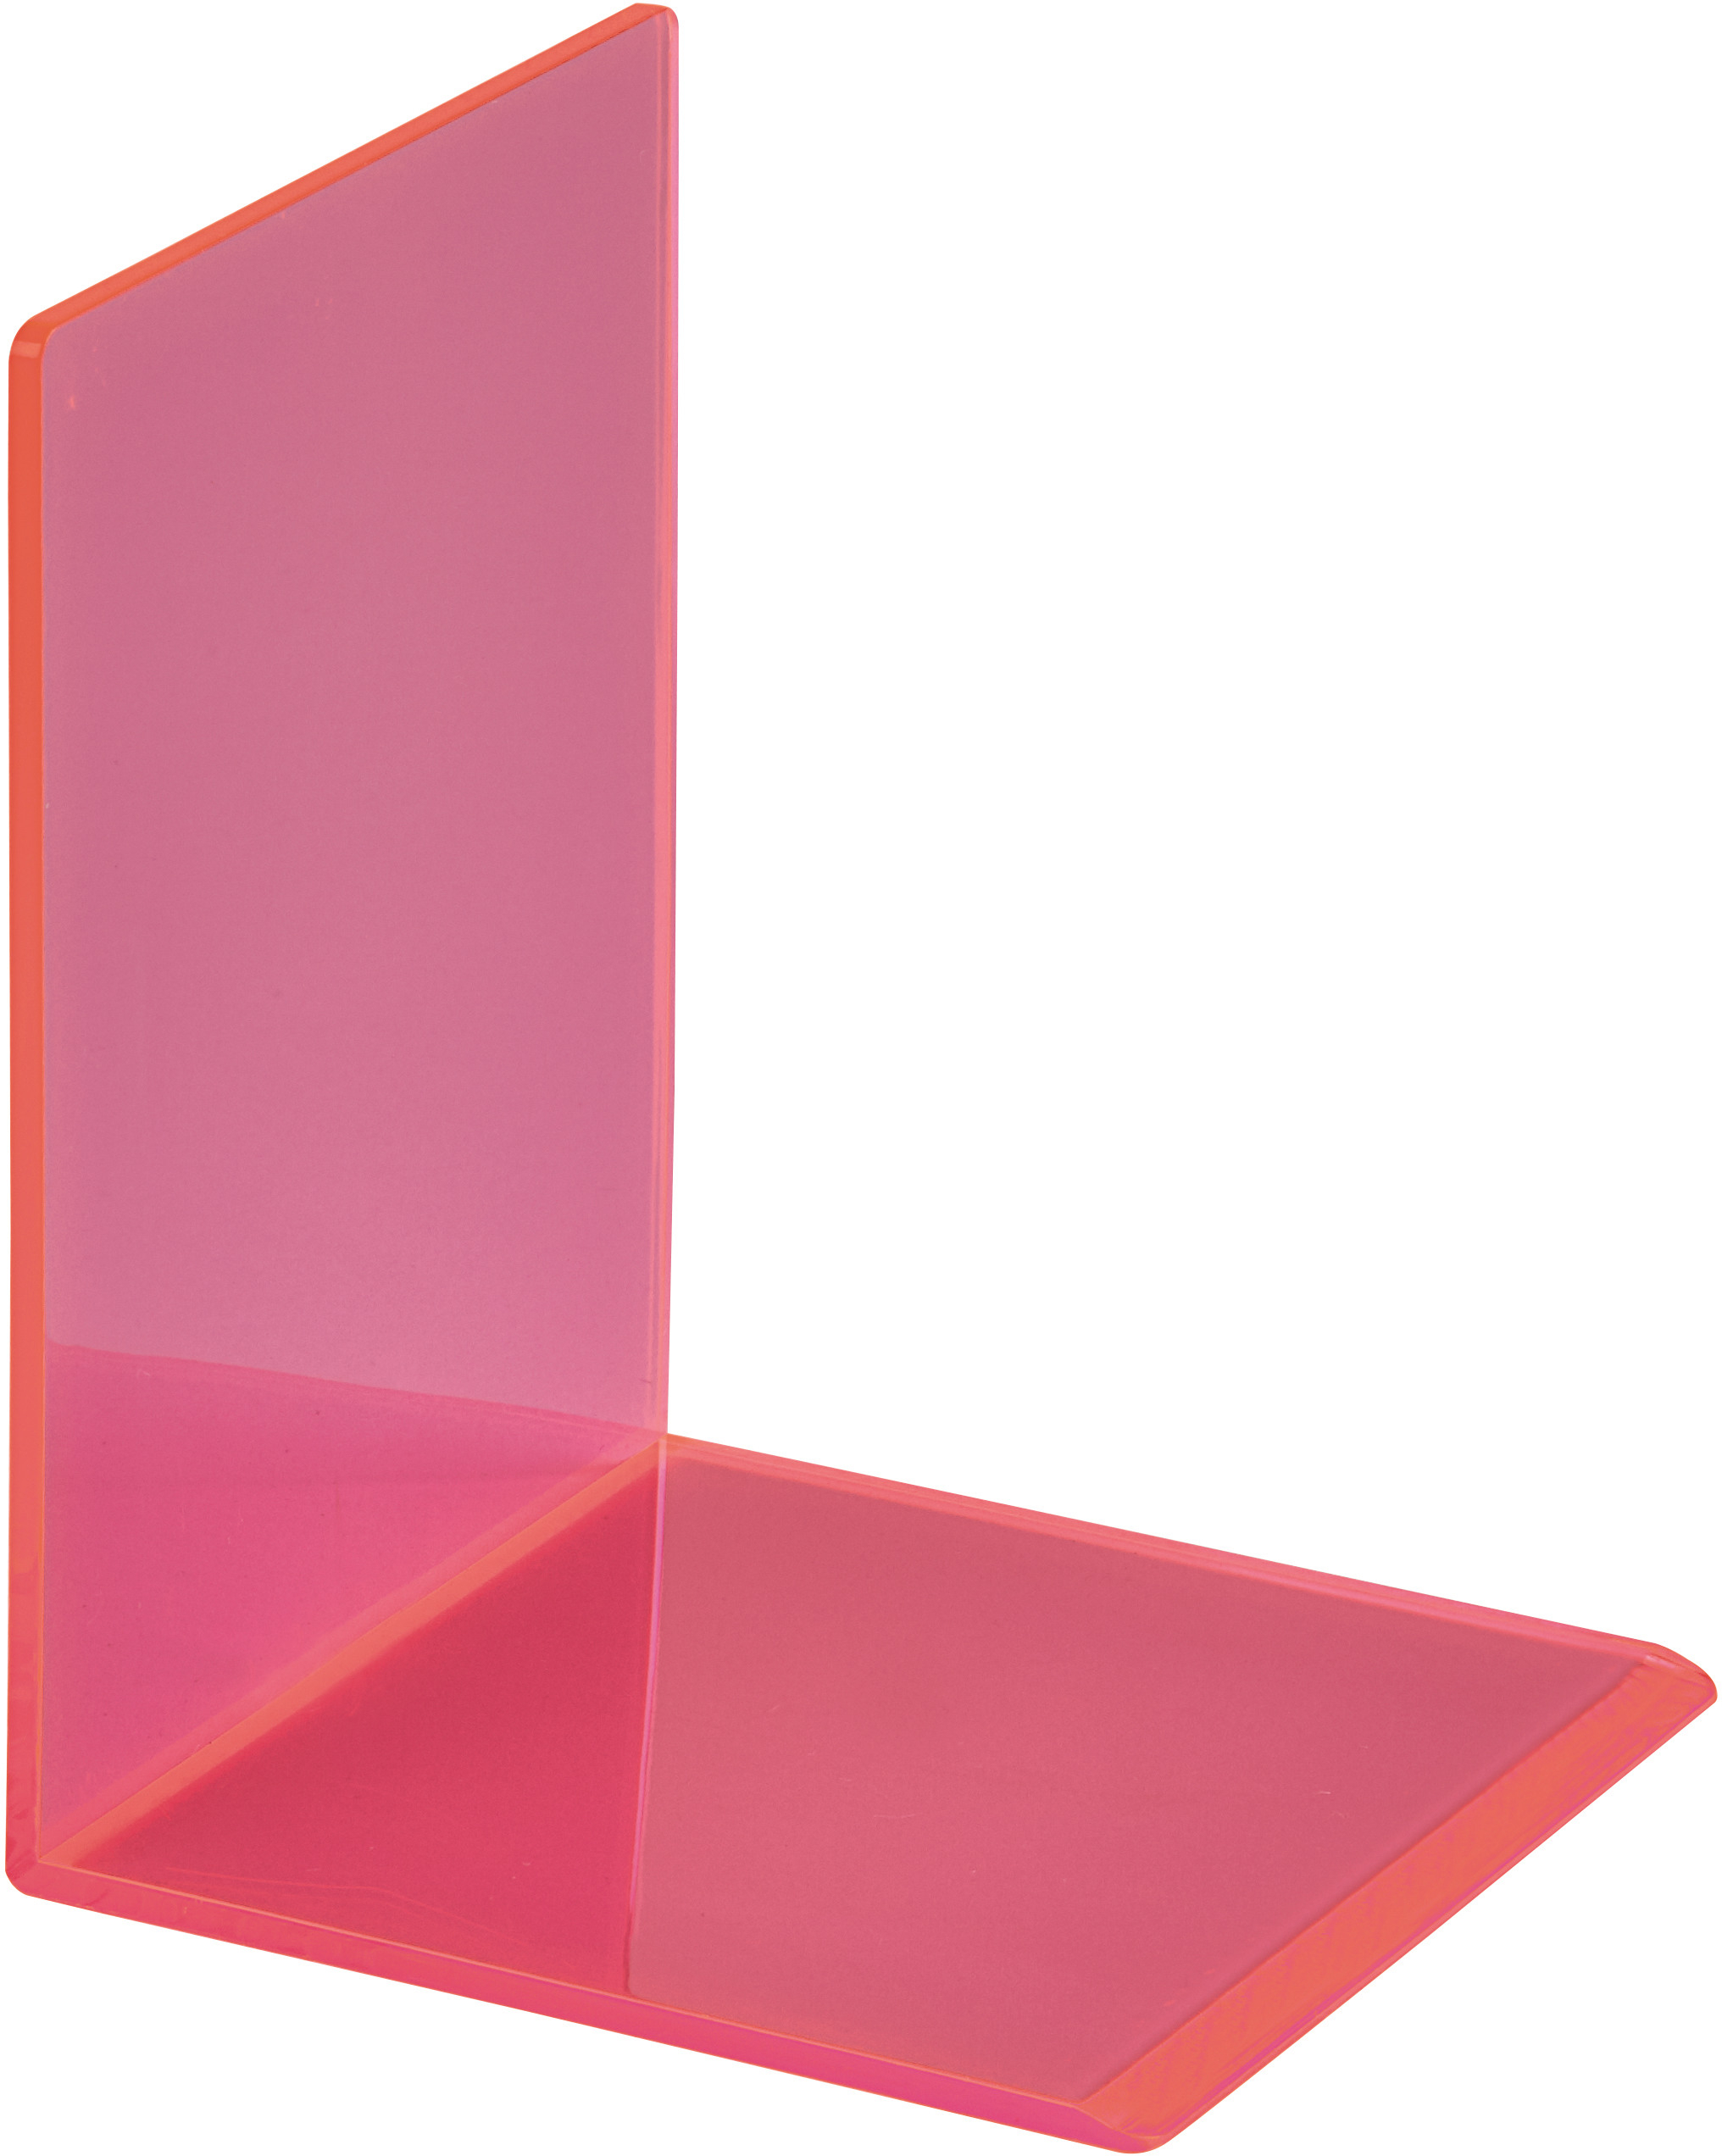 MAUL Buchstütze 10x10x13cm 3513621 transparent pink 2 Stück